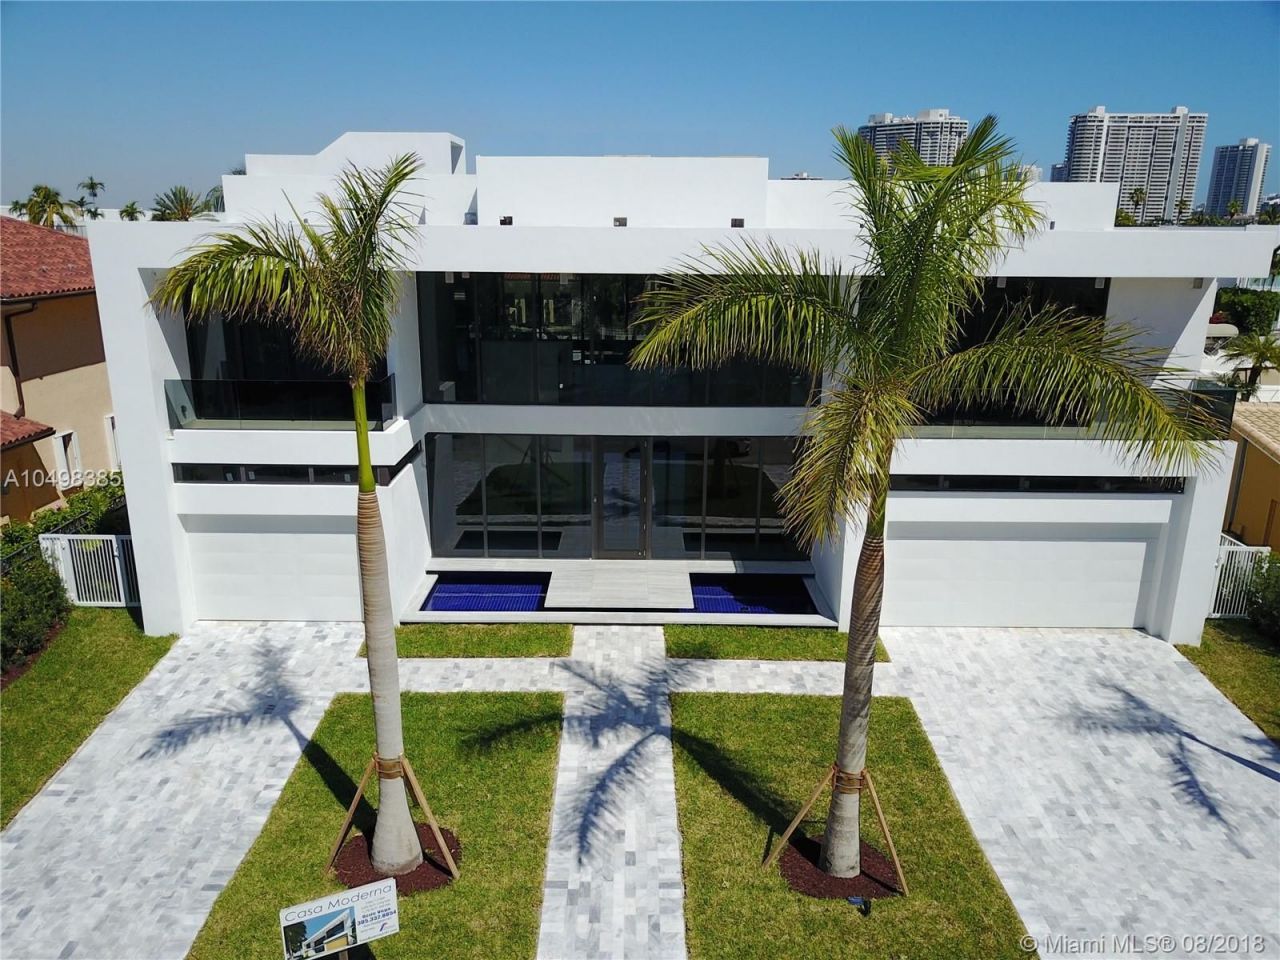 Villa in Miami, USA, 620 sq.m - picture 1